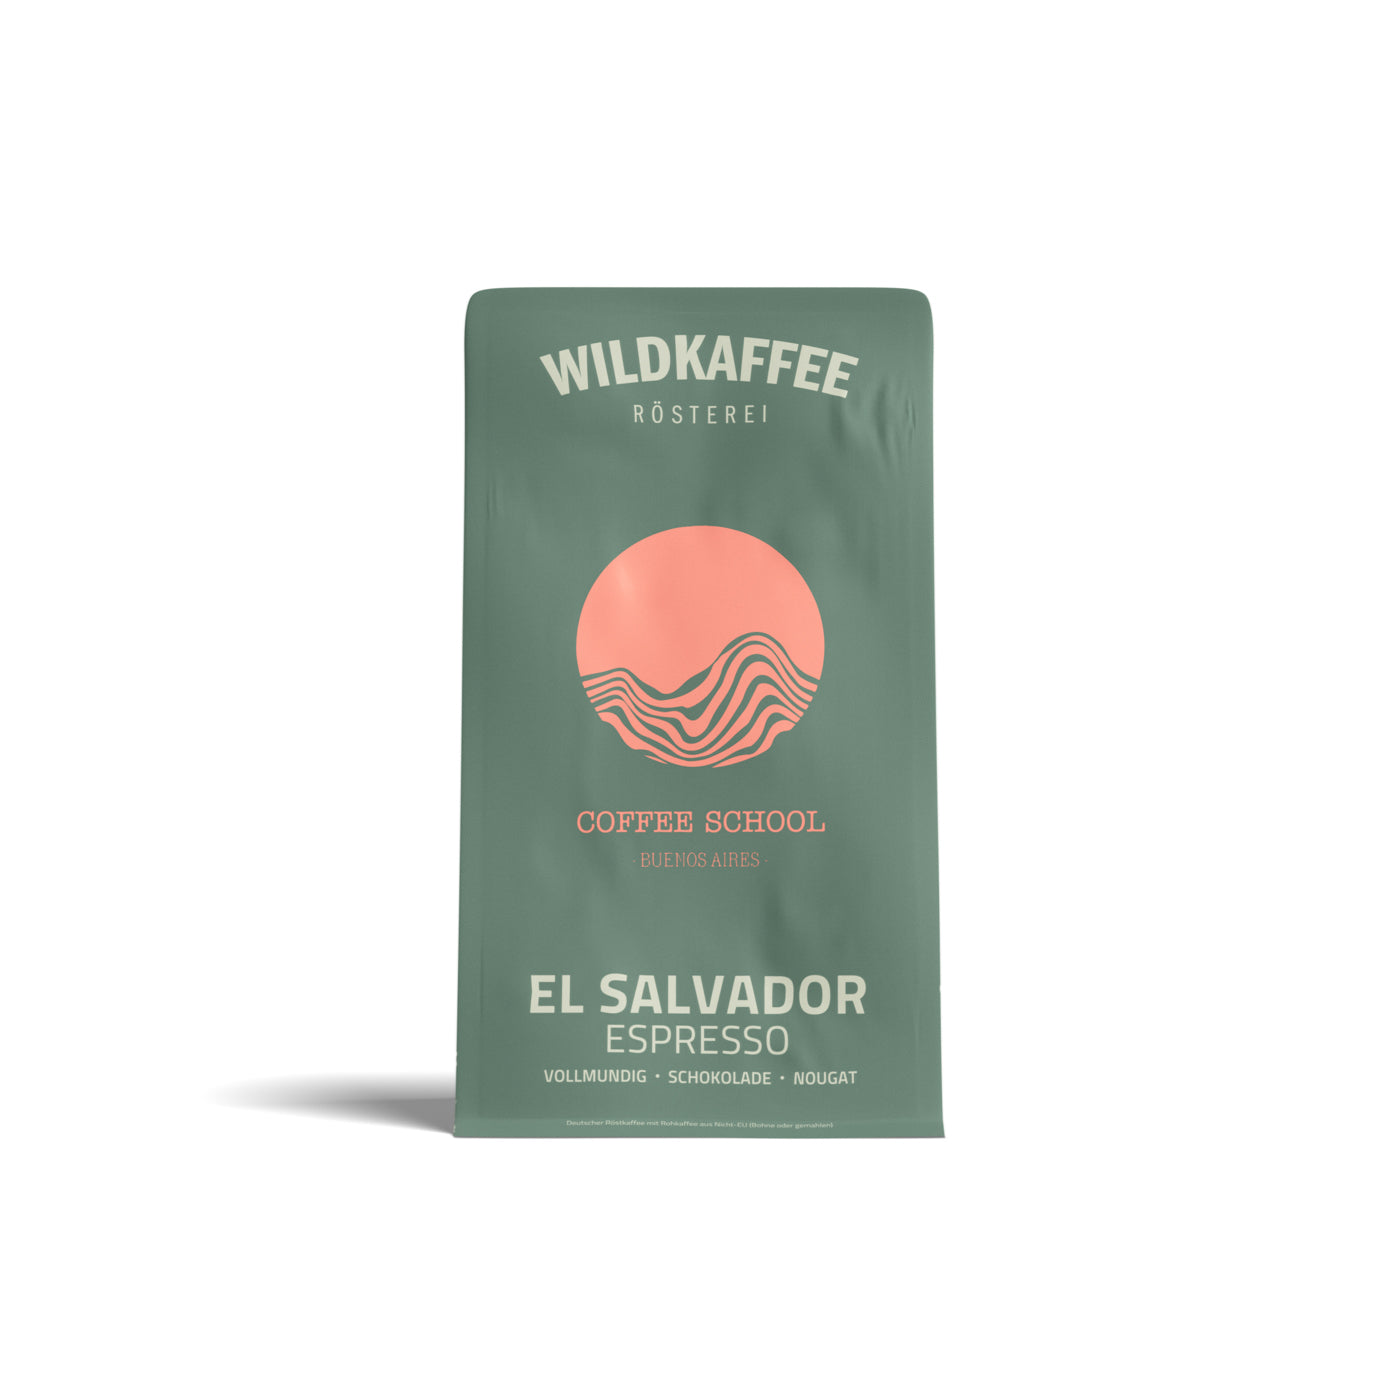 Espresso El Salvador Coffee School Project Wildkaffee Rösterei